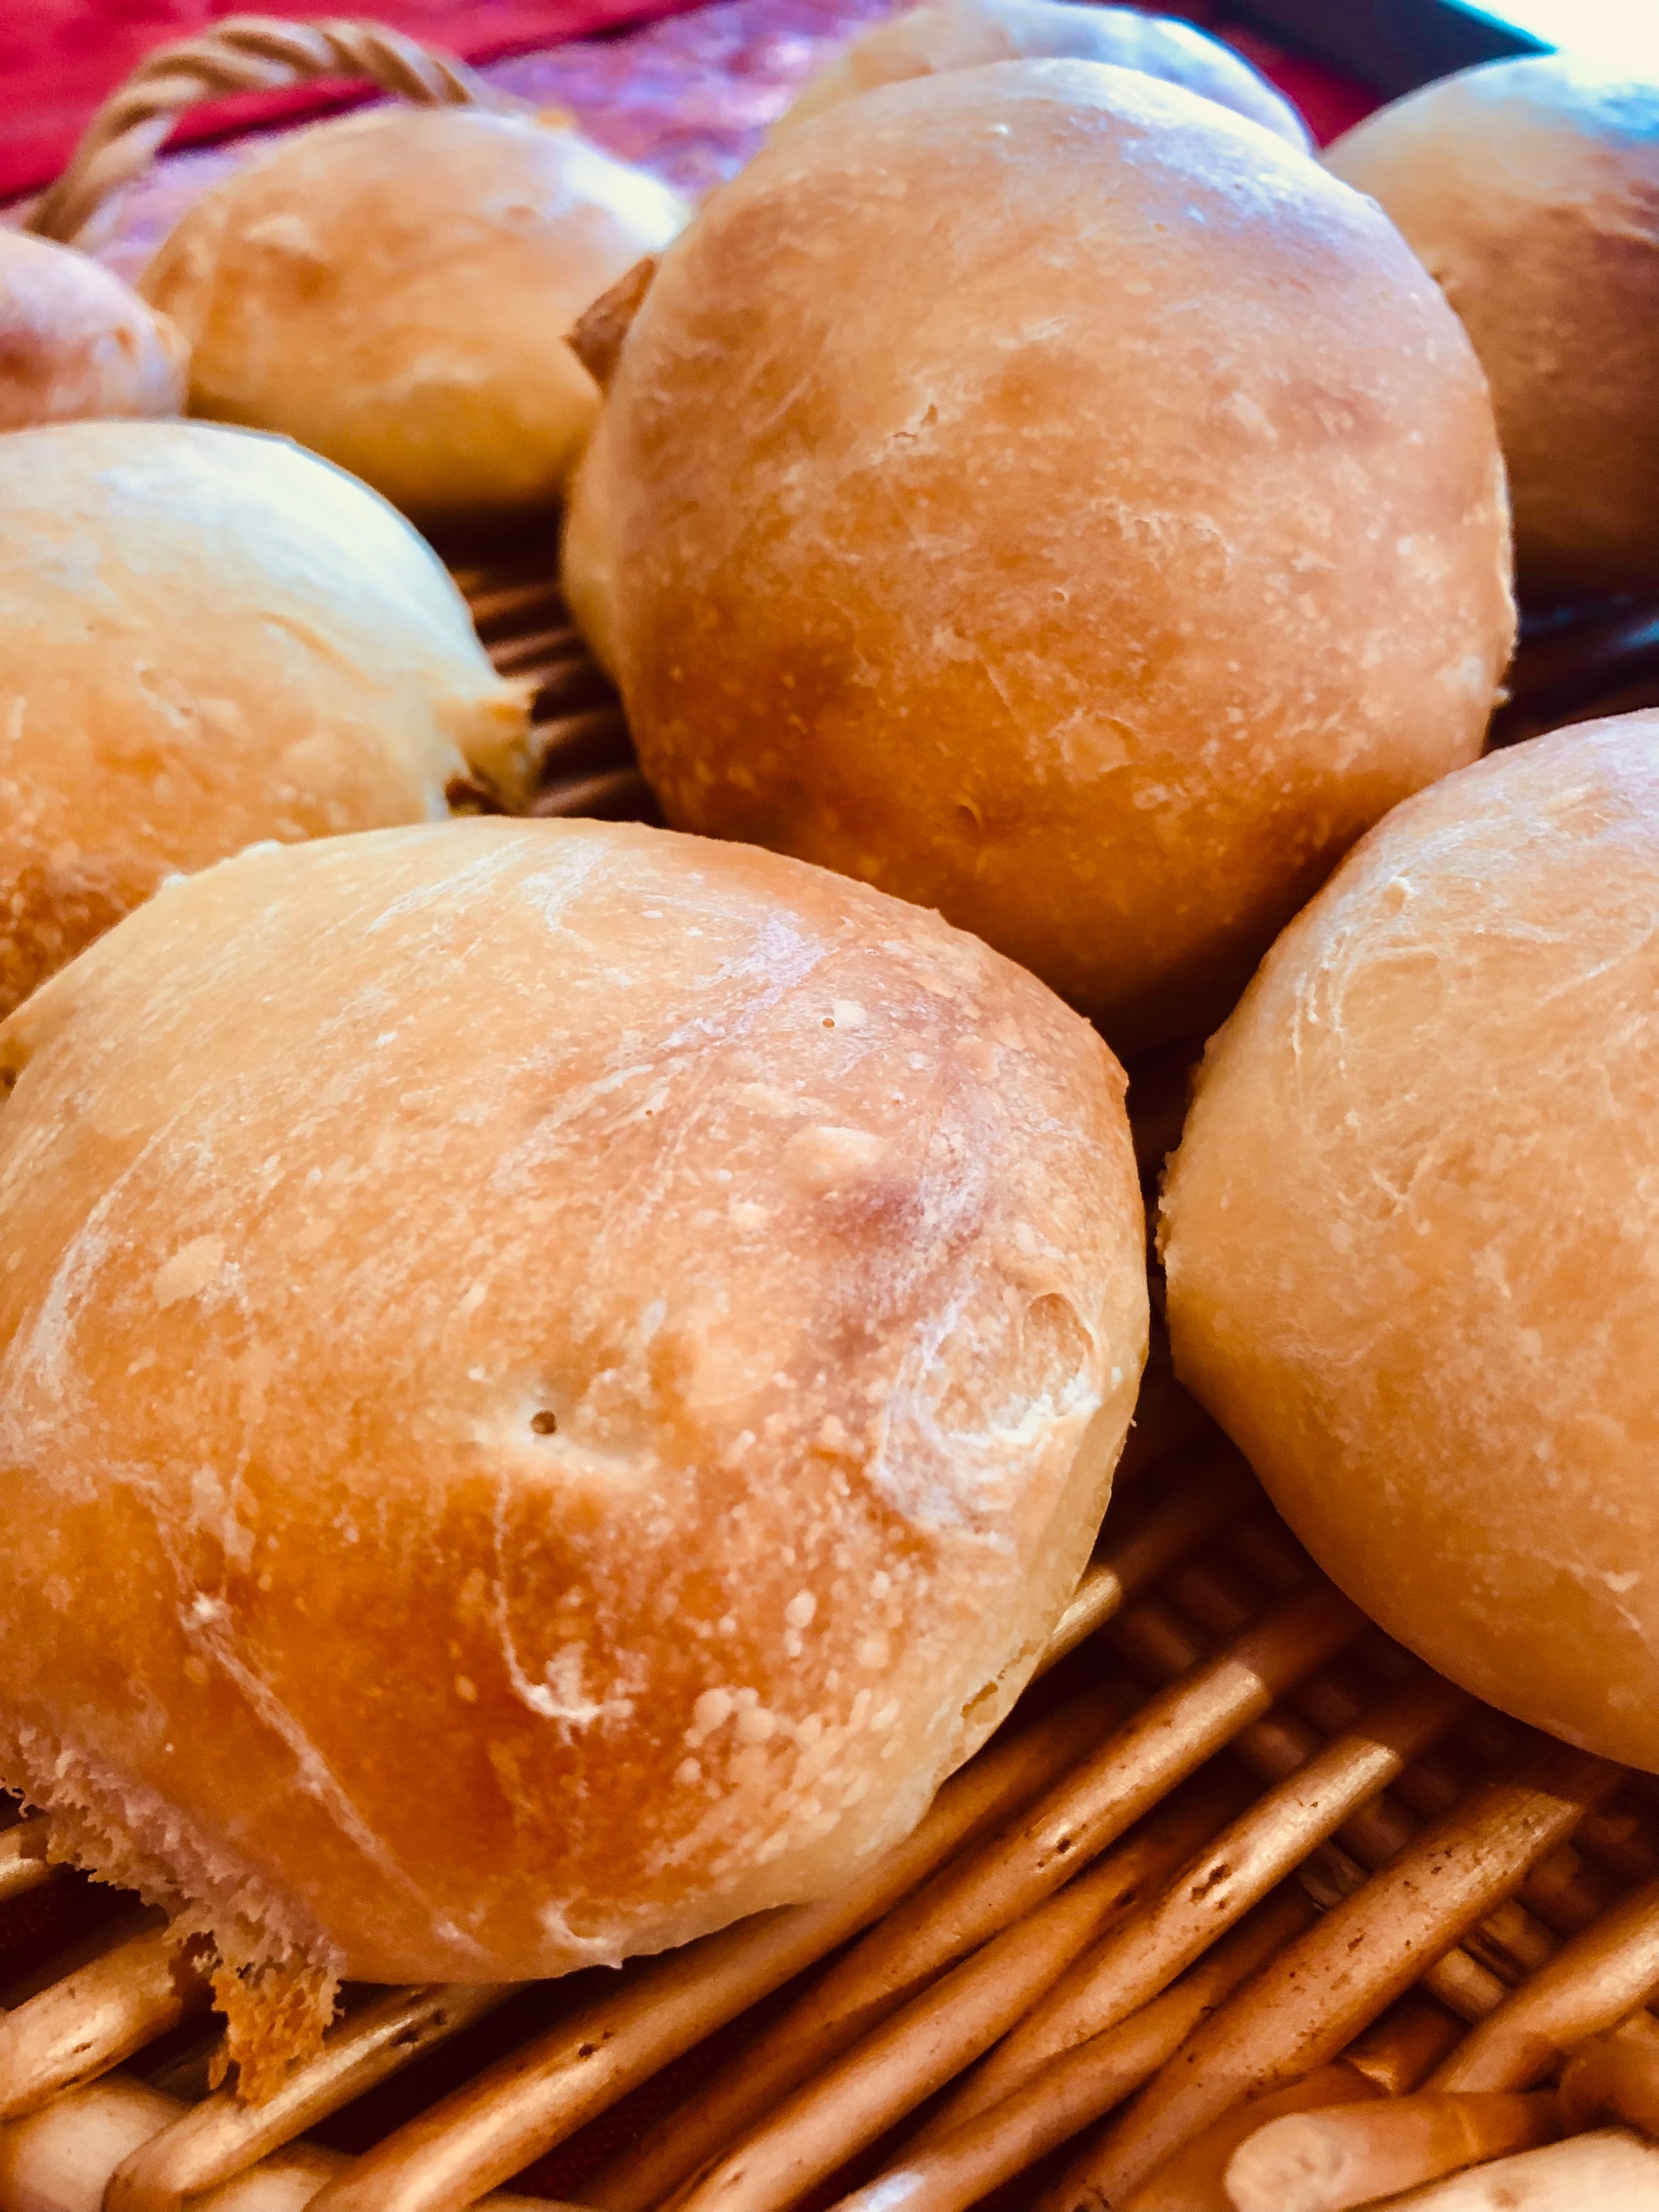 無農薬小麦粉と農薬不使用フルーツの天然酵母パン ベーグル&丸パン